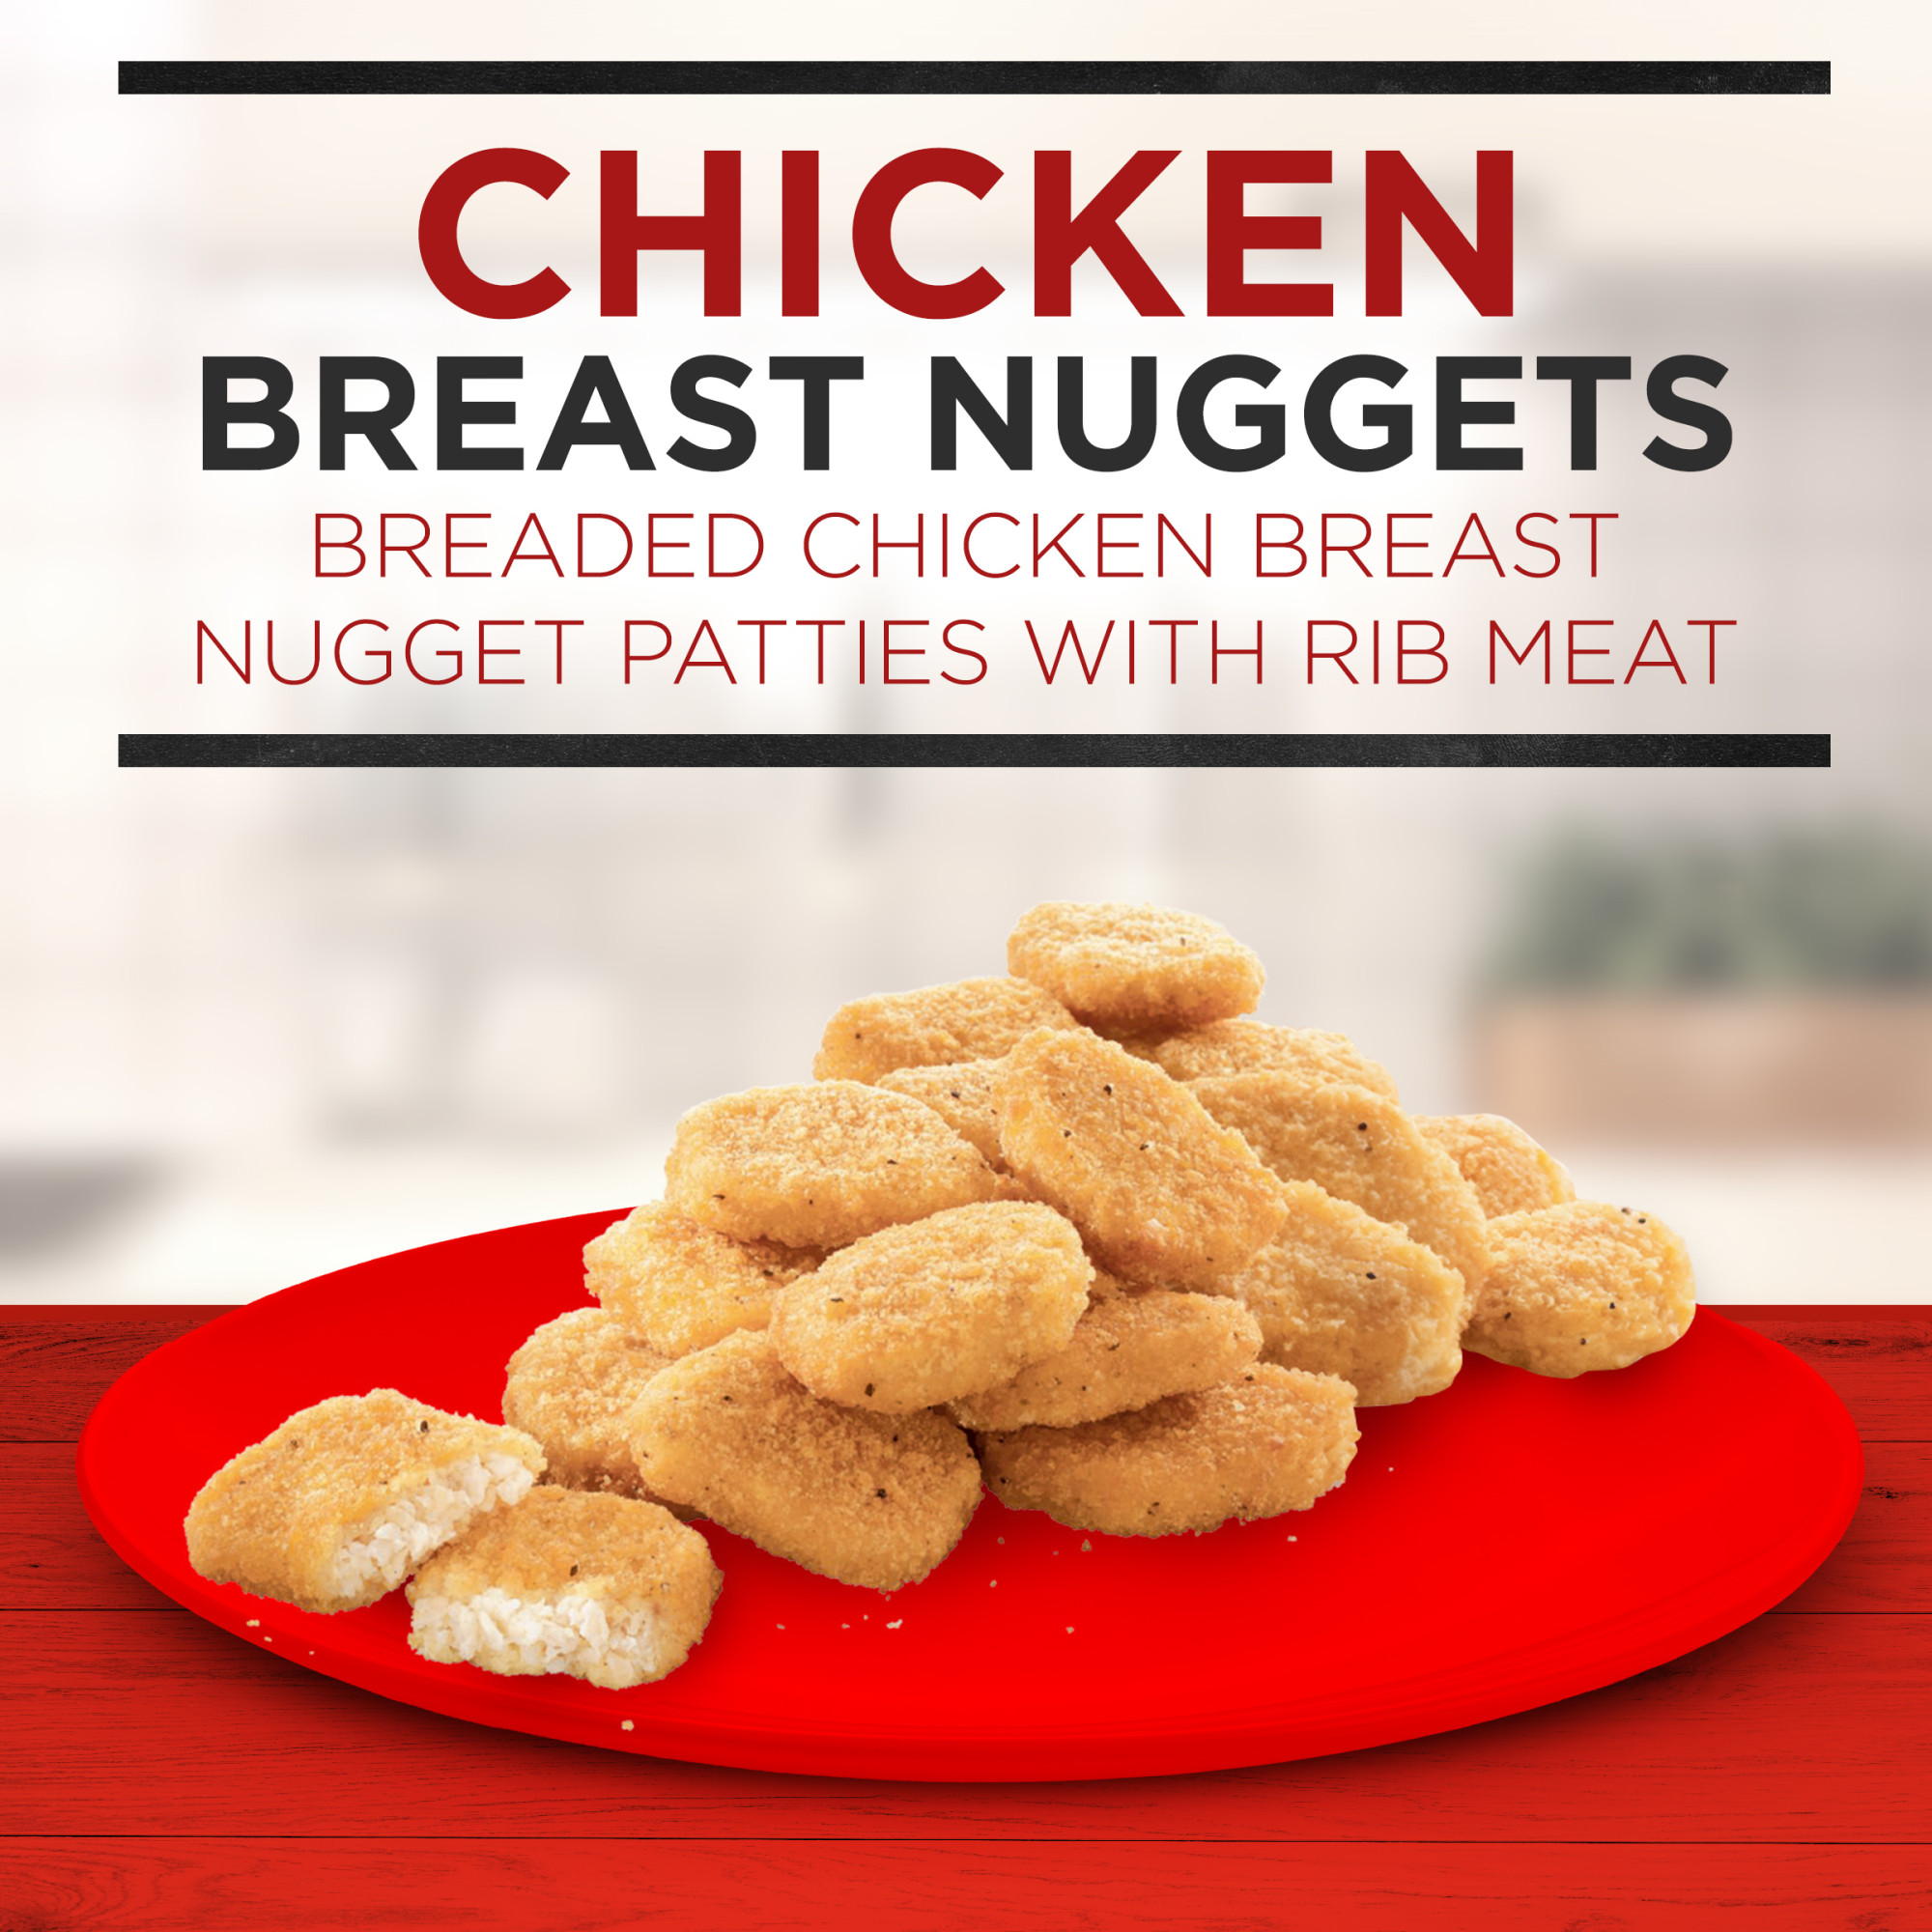 Banquet Chicken Breast Nuggets, Frozen Chicken, 30 oz (Frozen) - image 2 of 8